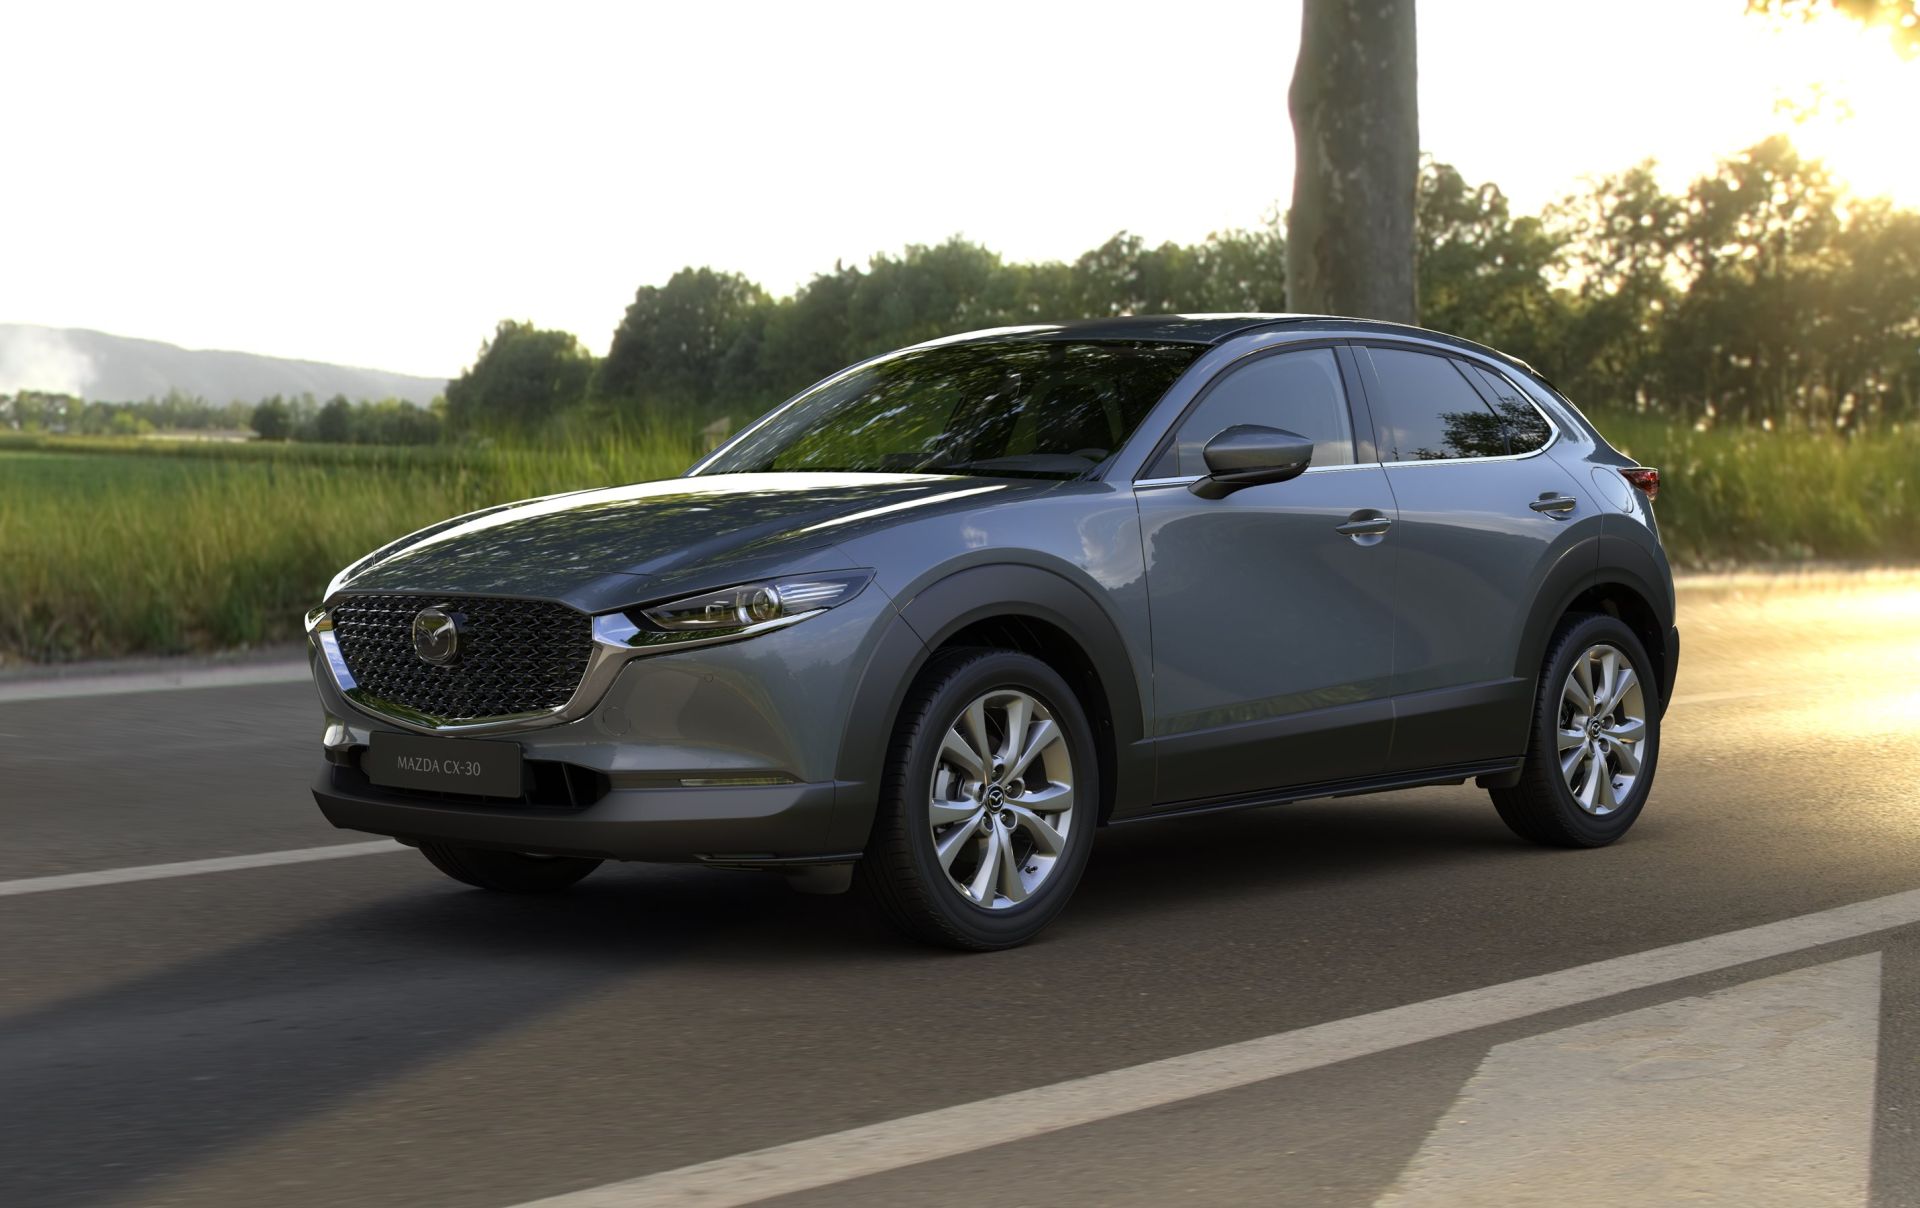 daar ben ik het mee eens fabriek spellen ZZP'er: auto privé houden of op de zaak zetten? - Mazda Blog